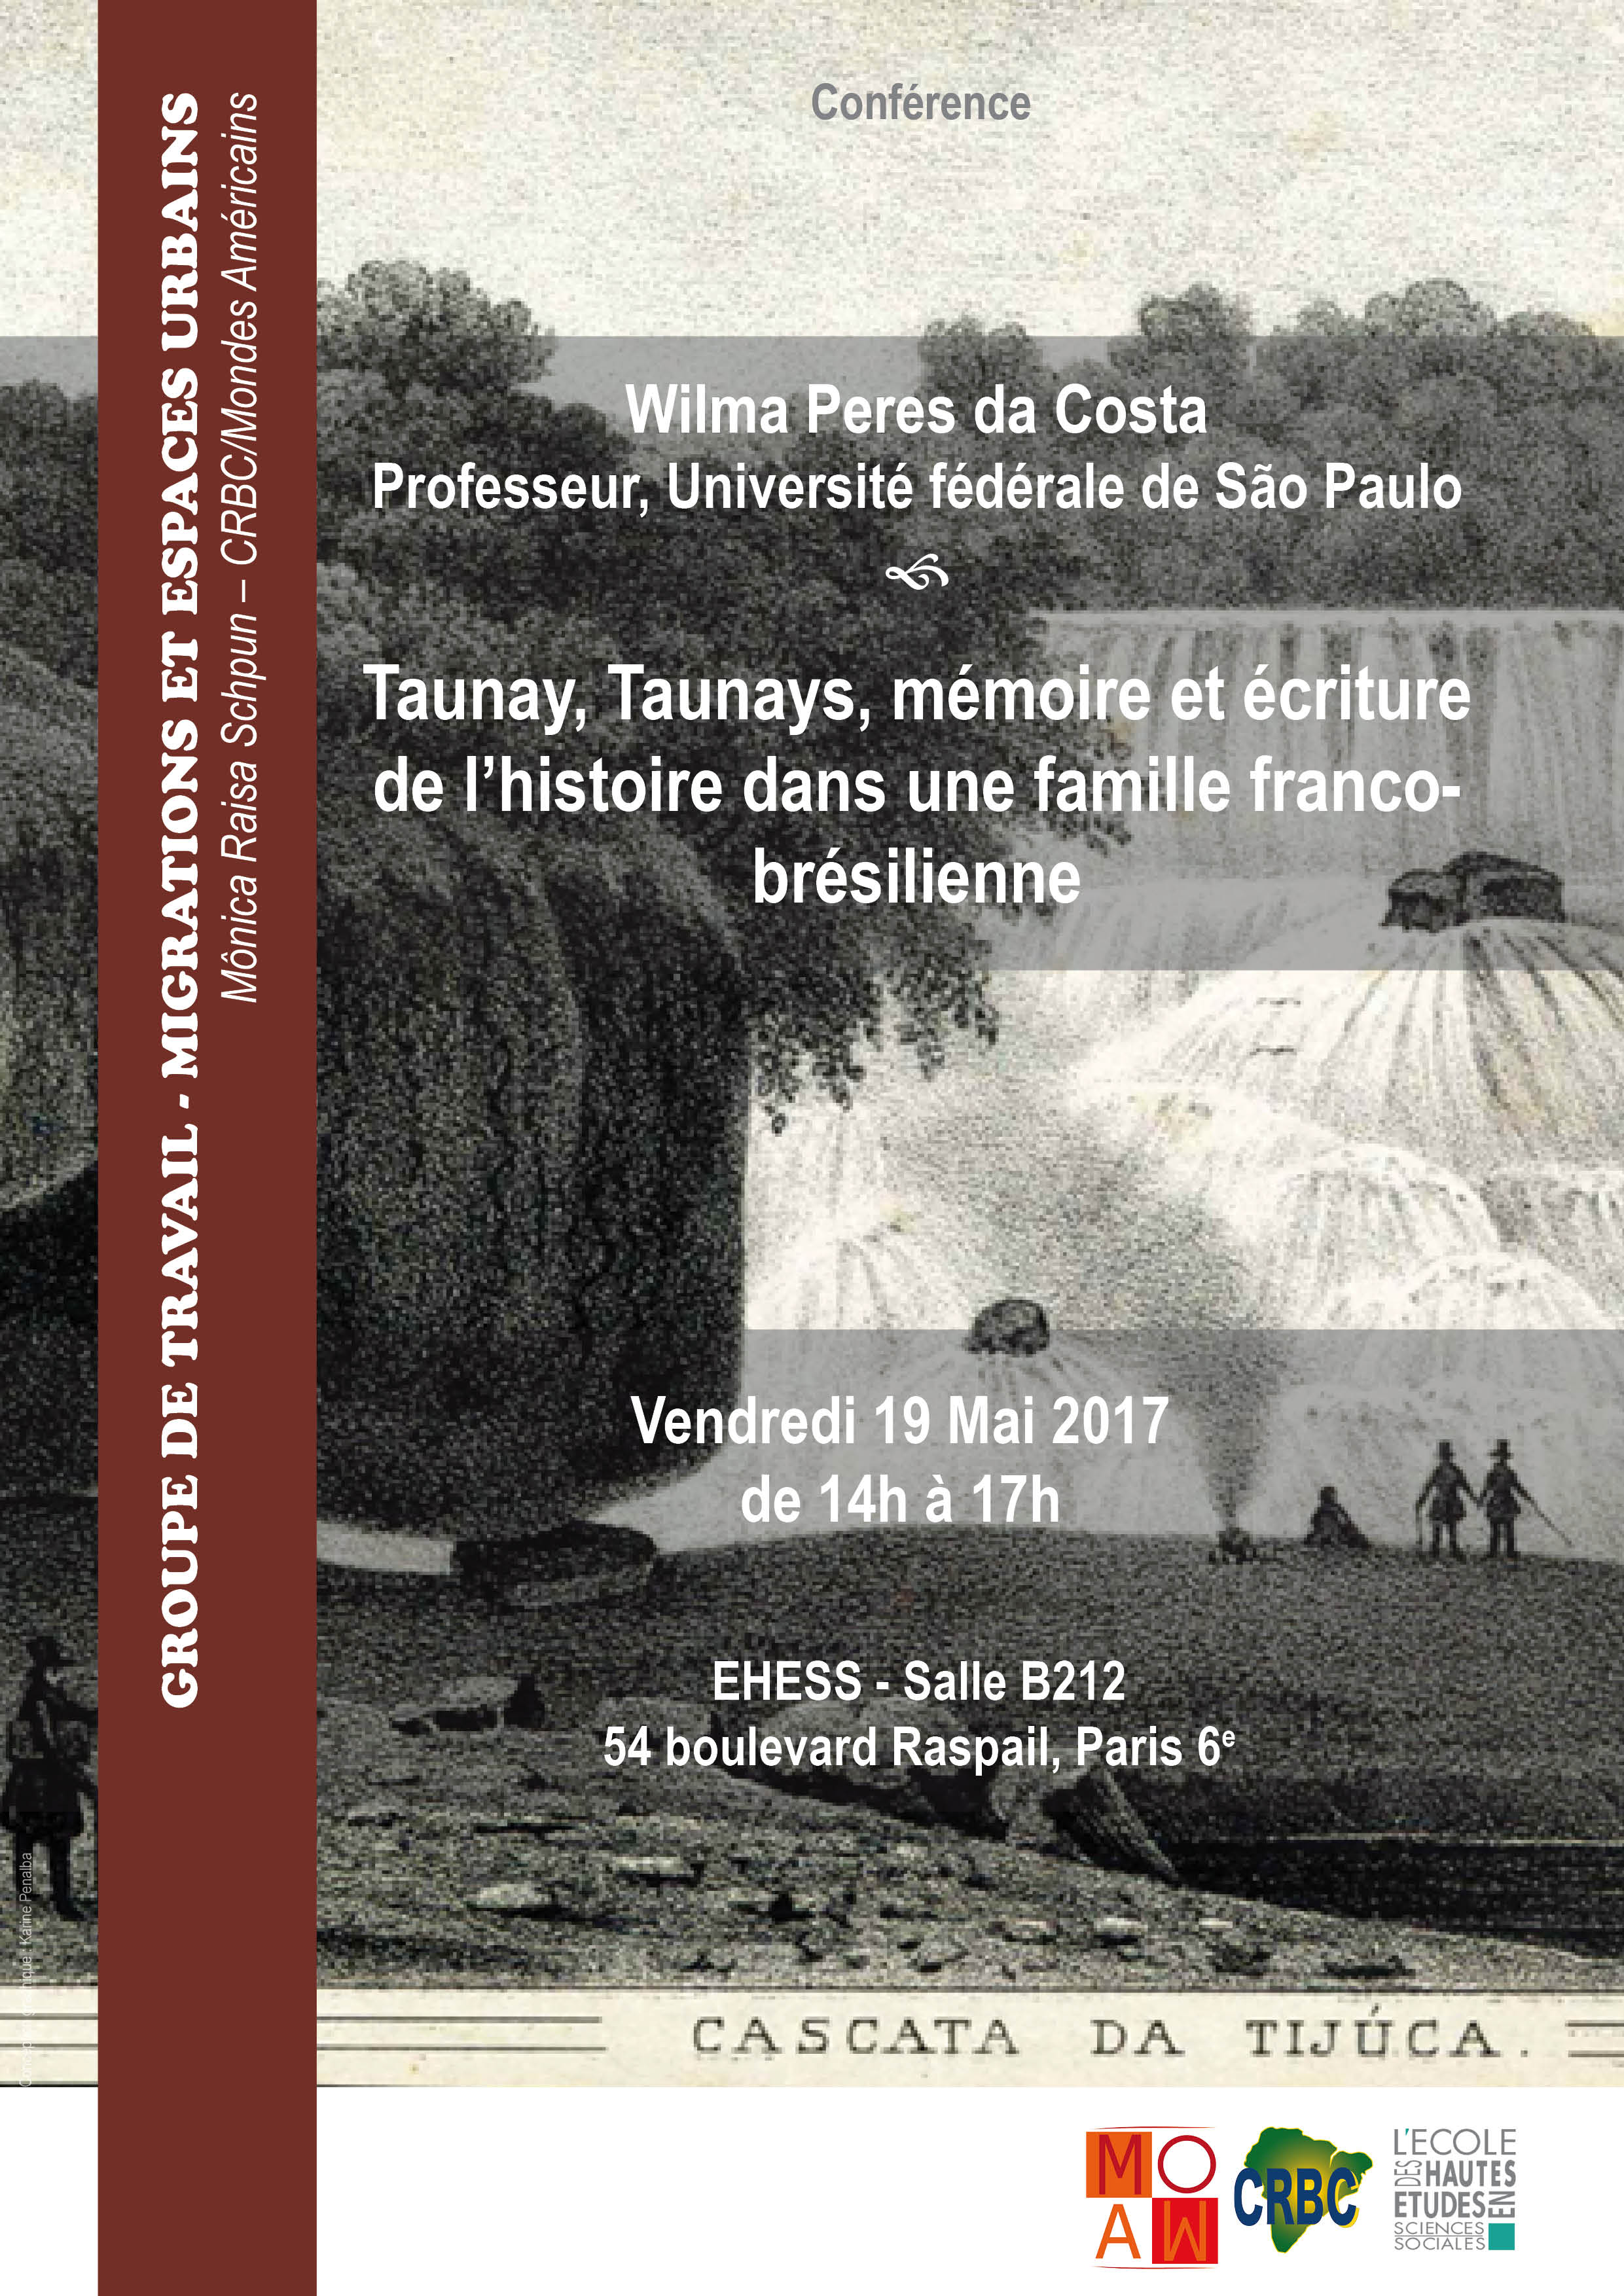 Dans le cadre du Groupe de travail - Migrations et espaces urbains Conférence de Wilma Peres da Costa 